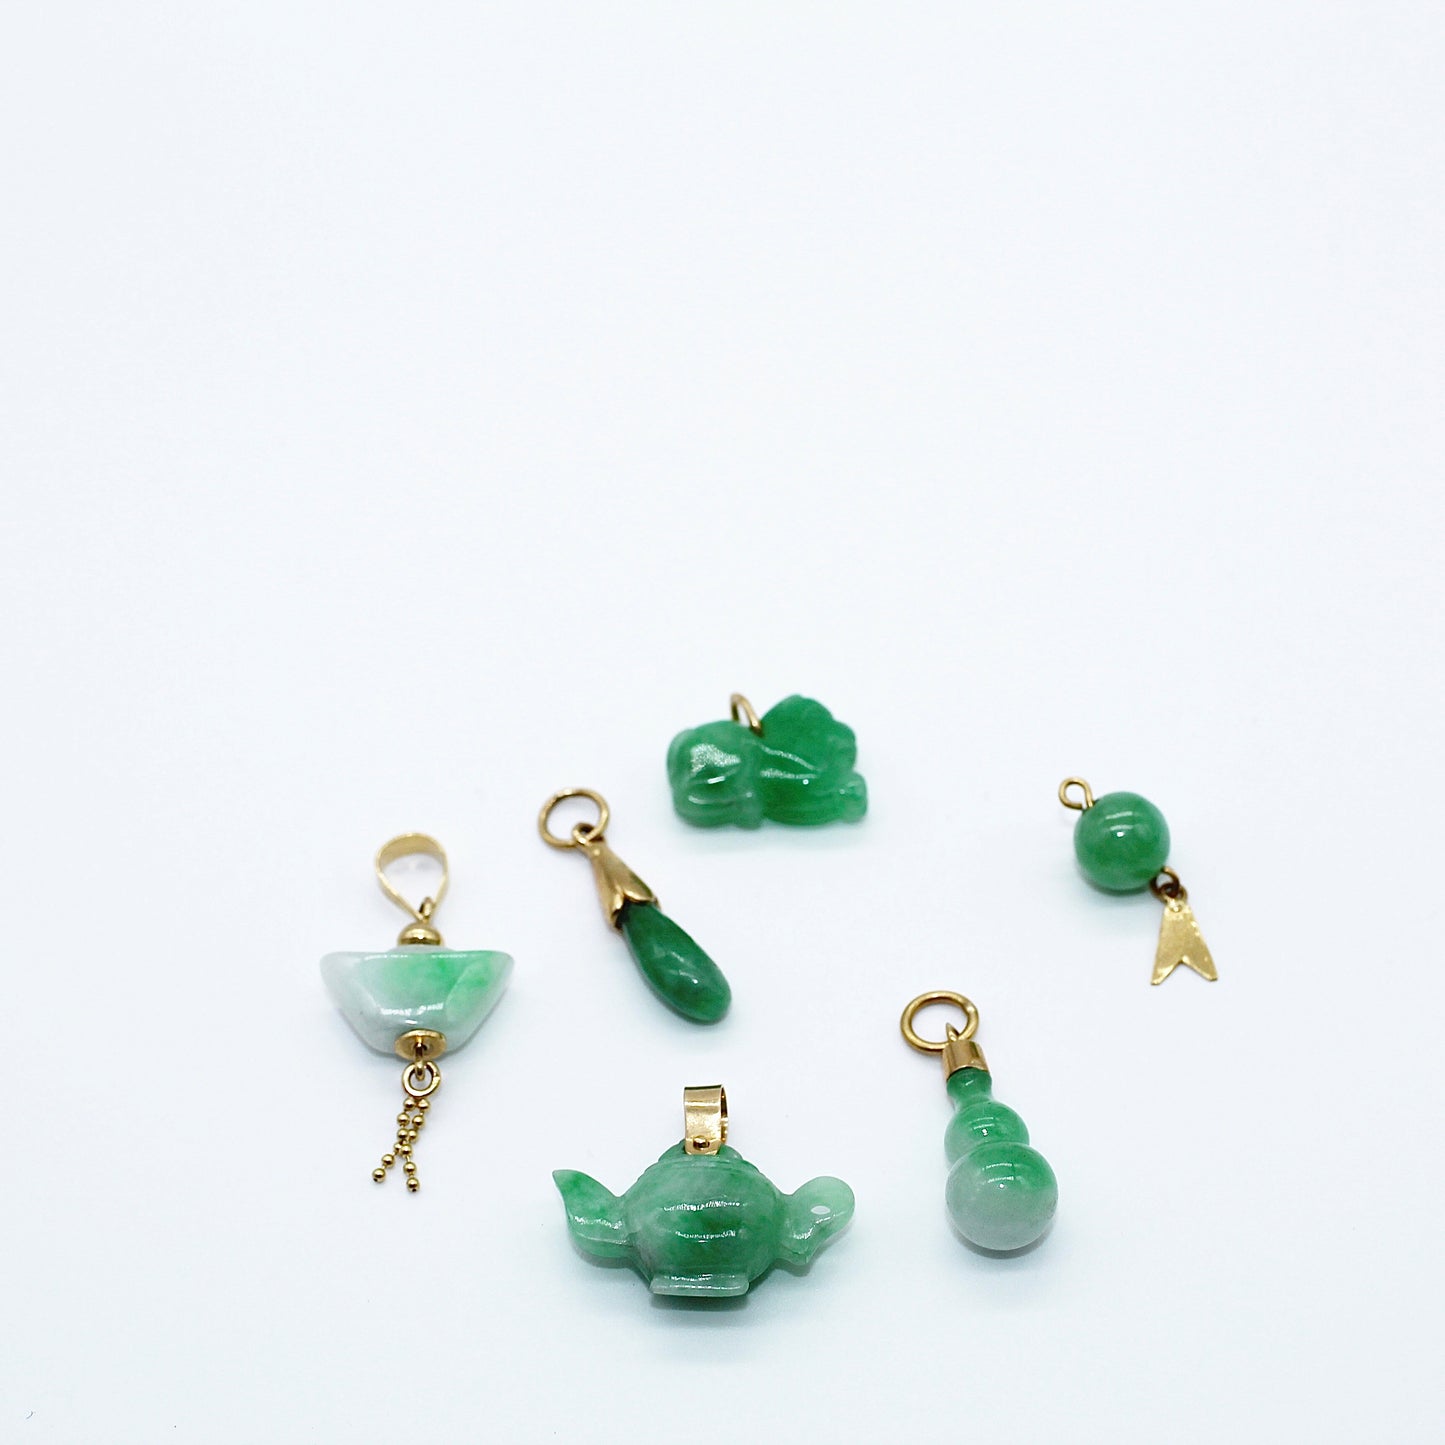 Cool Jade Charms